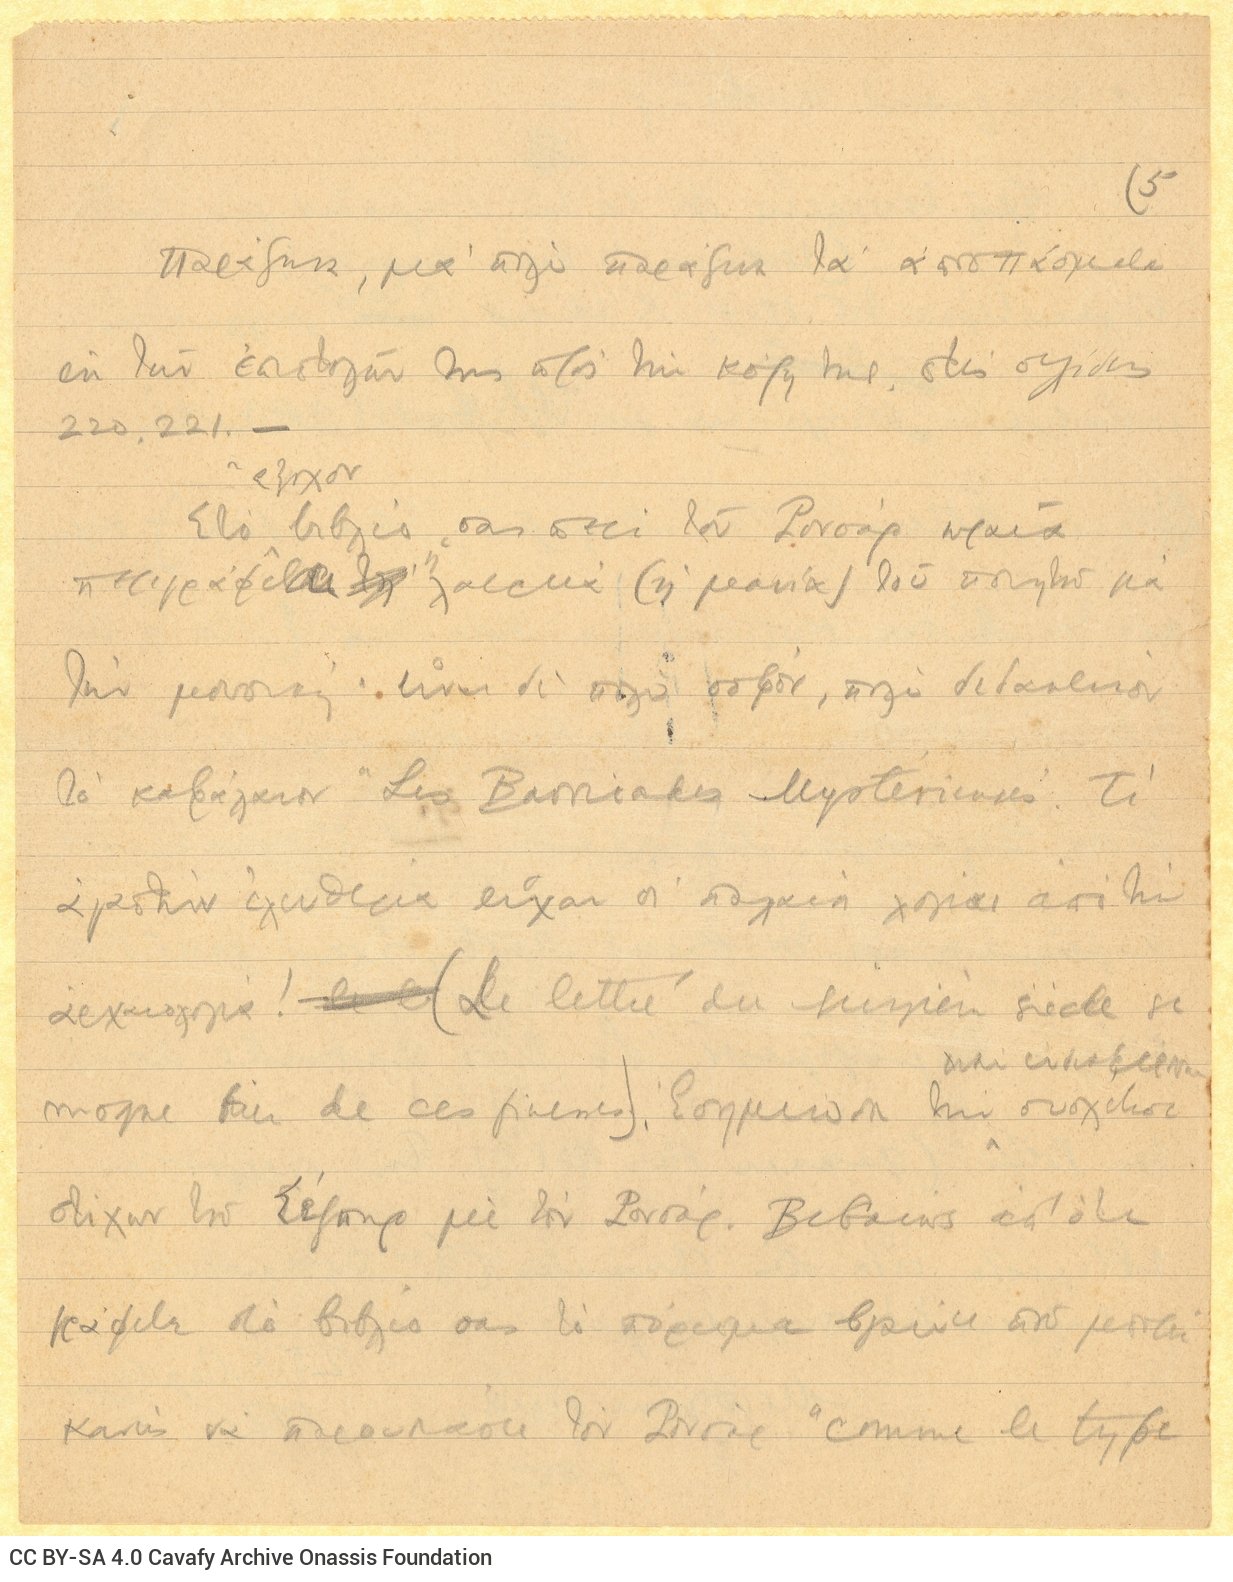 Χειρόγραφο σχέδιο επιστολής του Καβάφη σε τρία διαγραμμισμένα φύλλ�